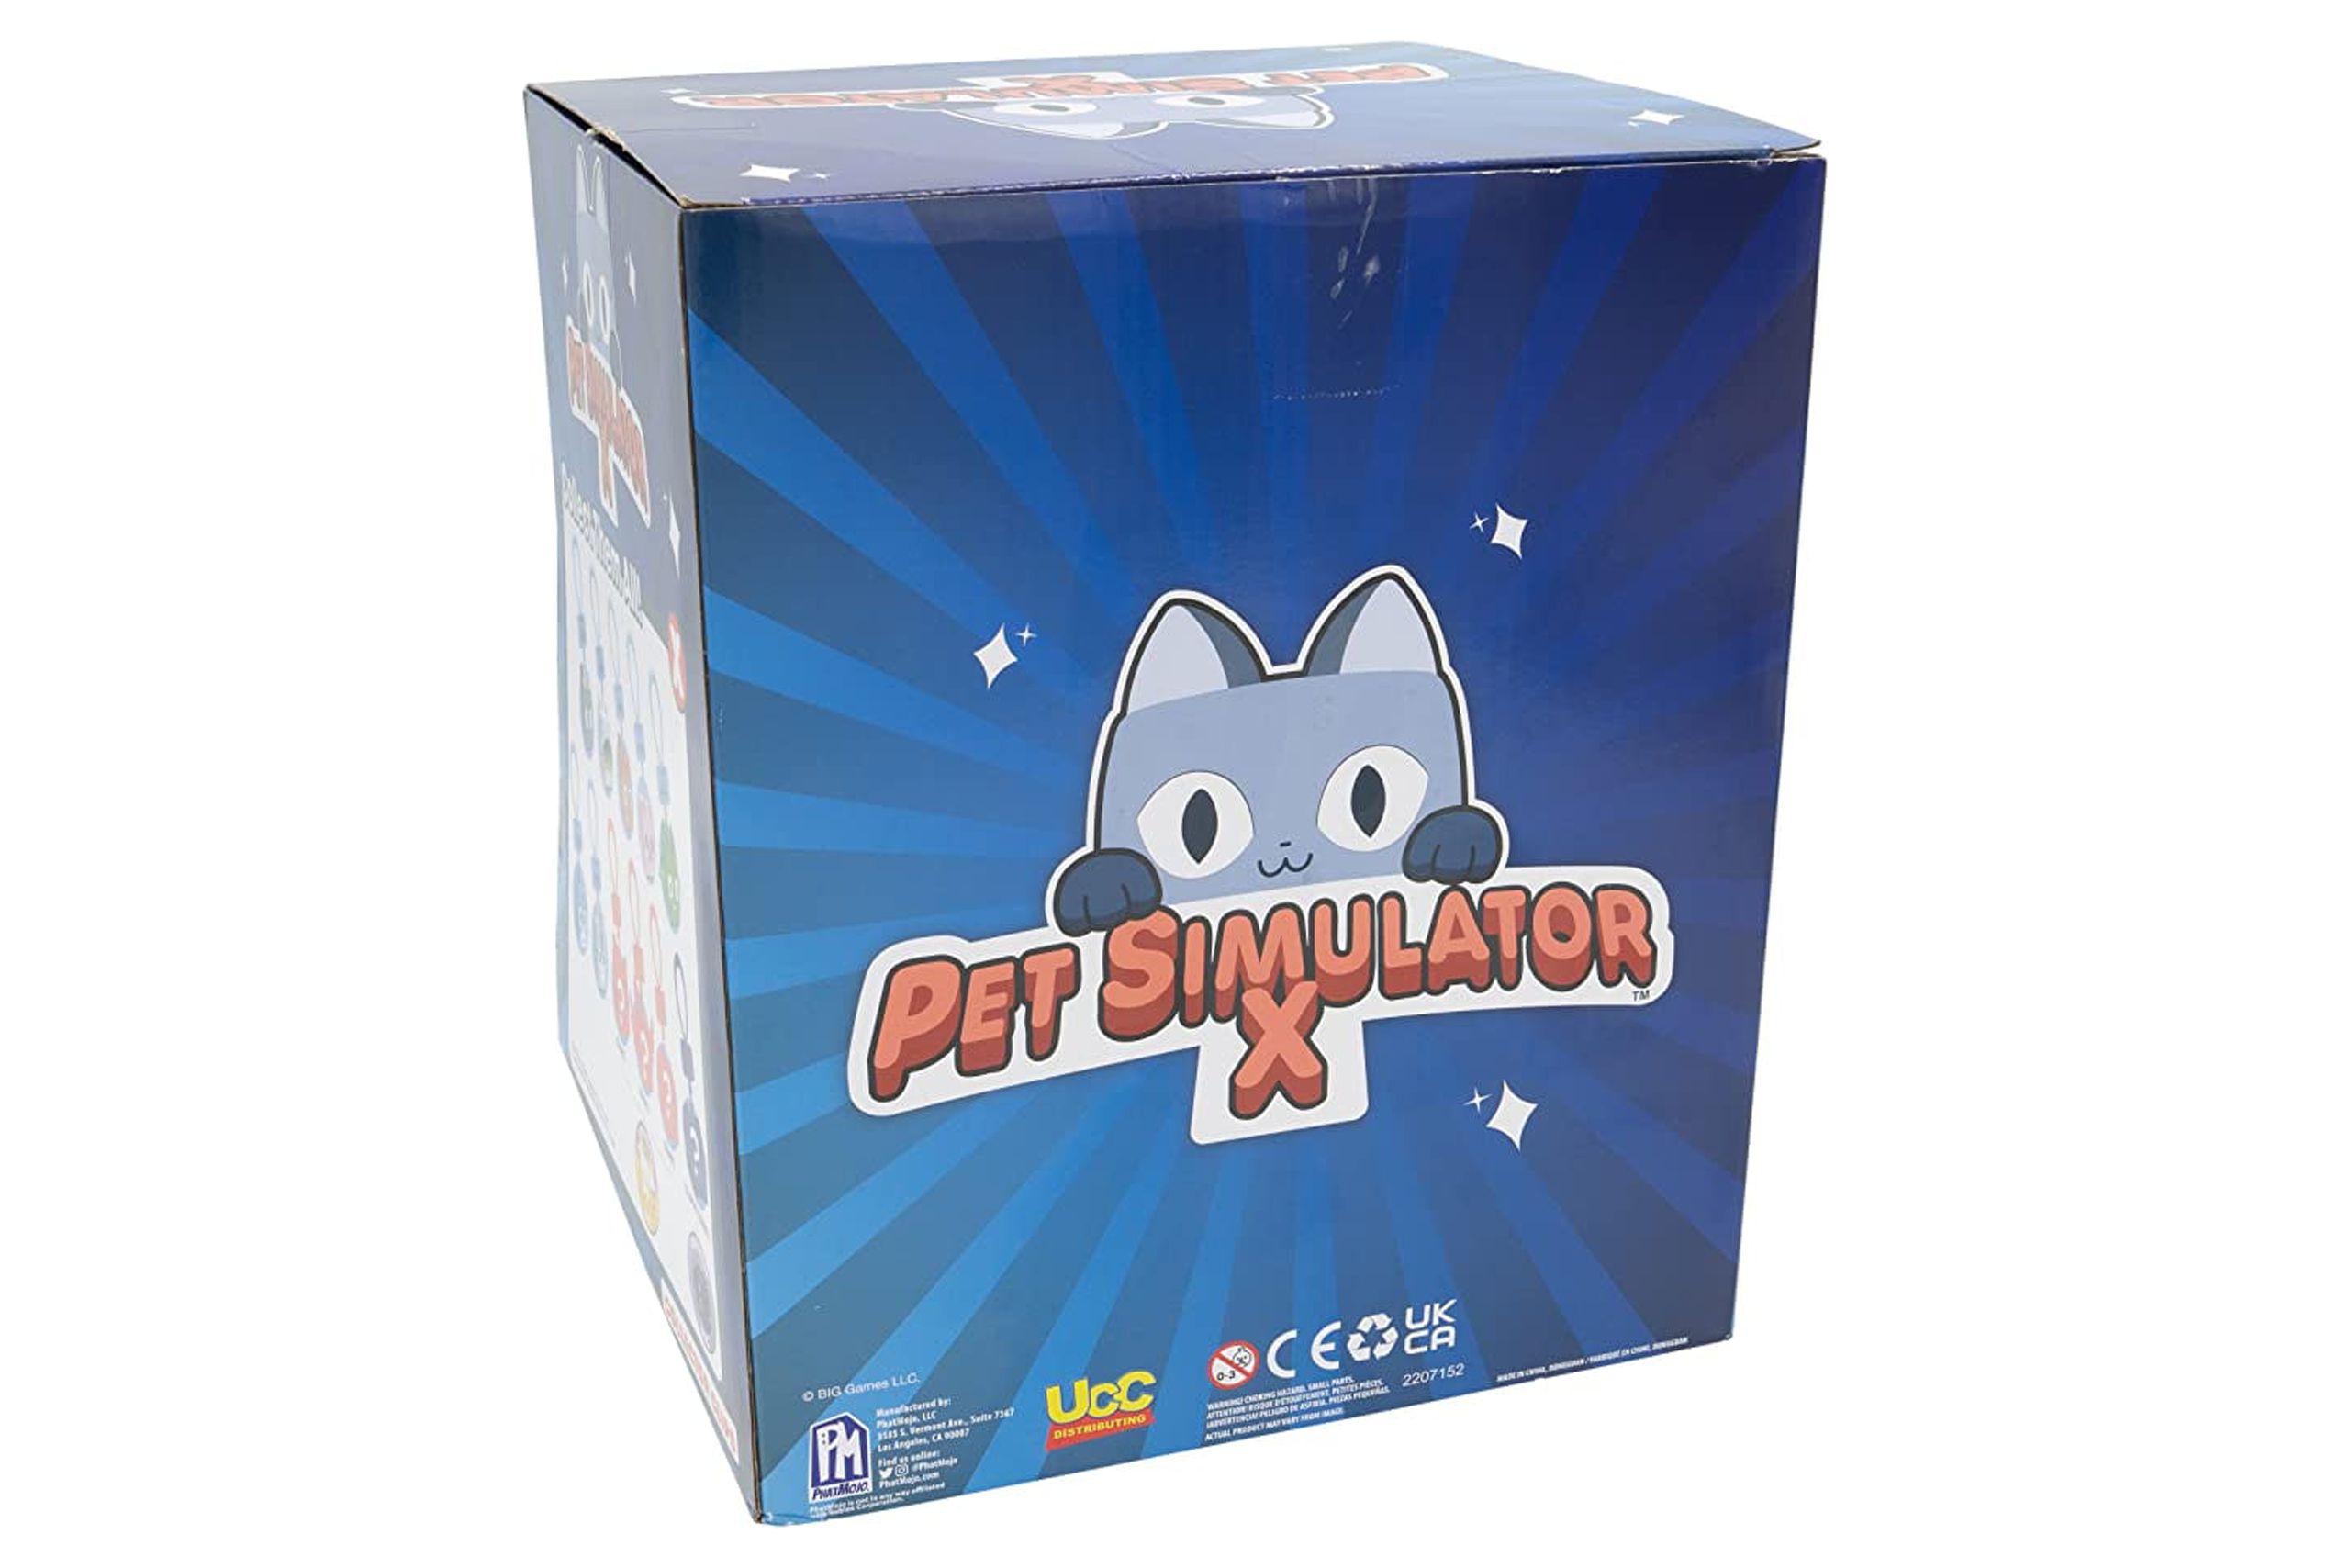 Pet Simulator X Toys Codes